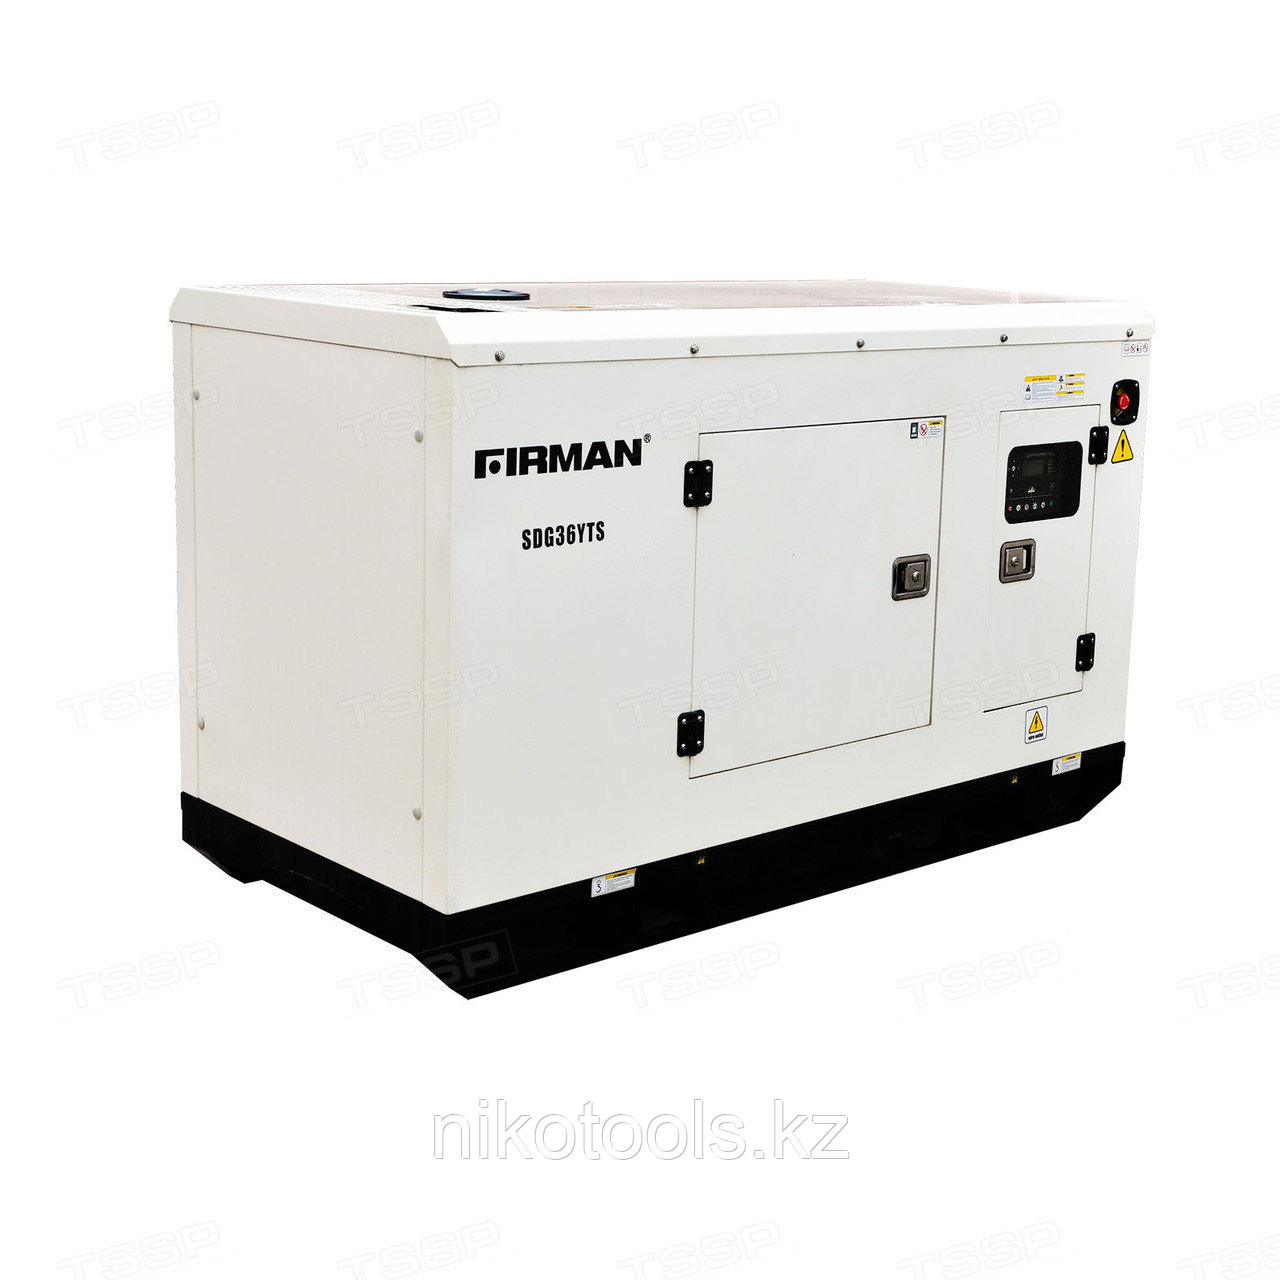 Дизельный генератор FIRMAN SDG250FS+ATS 